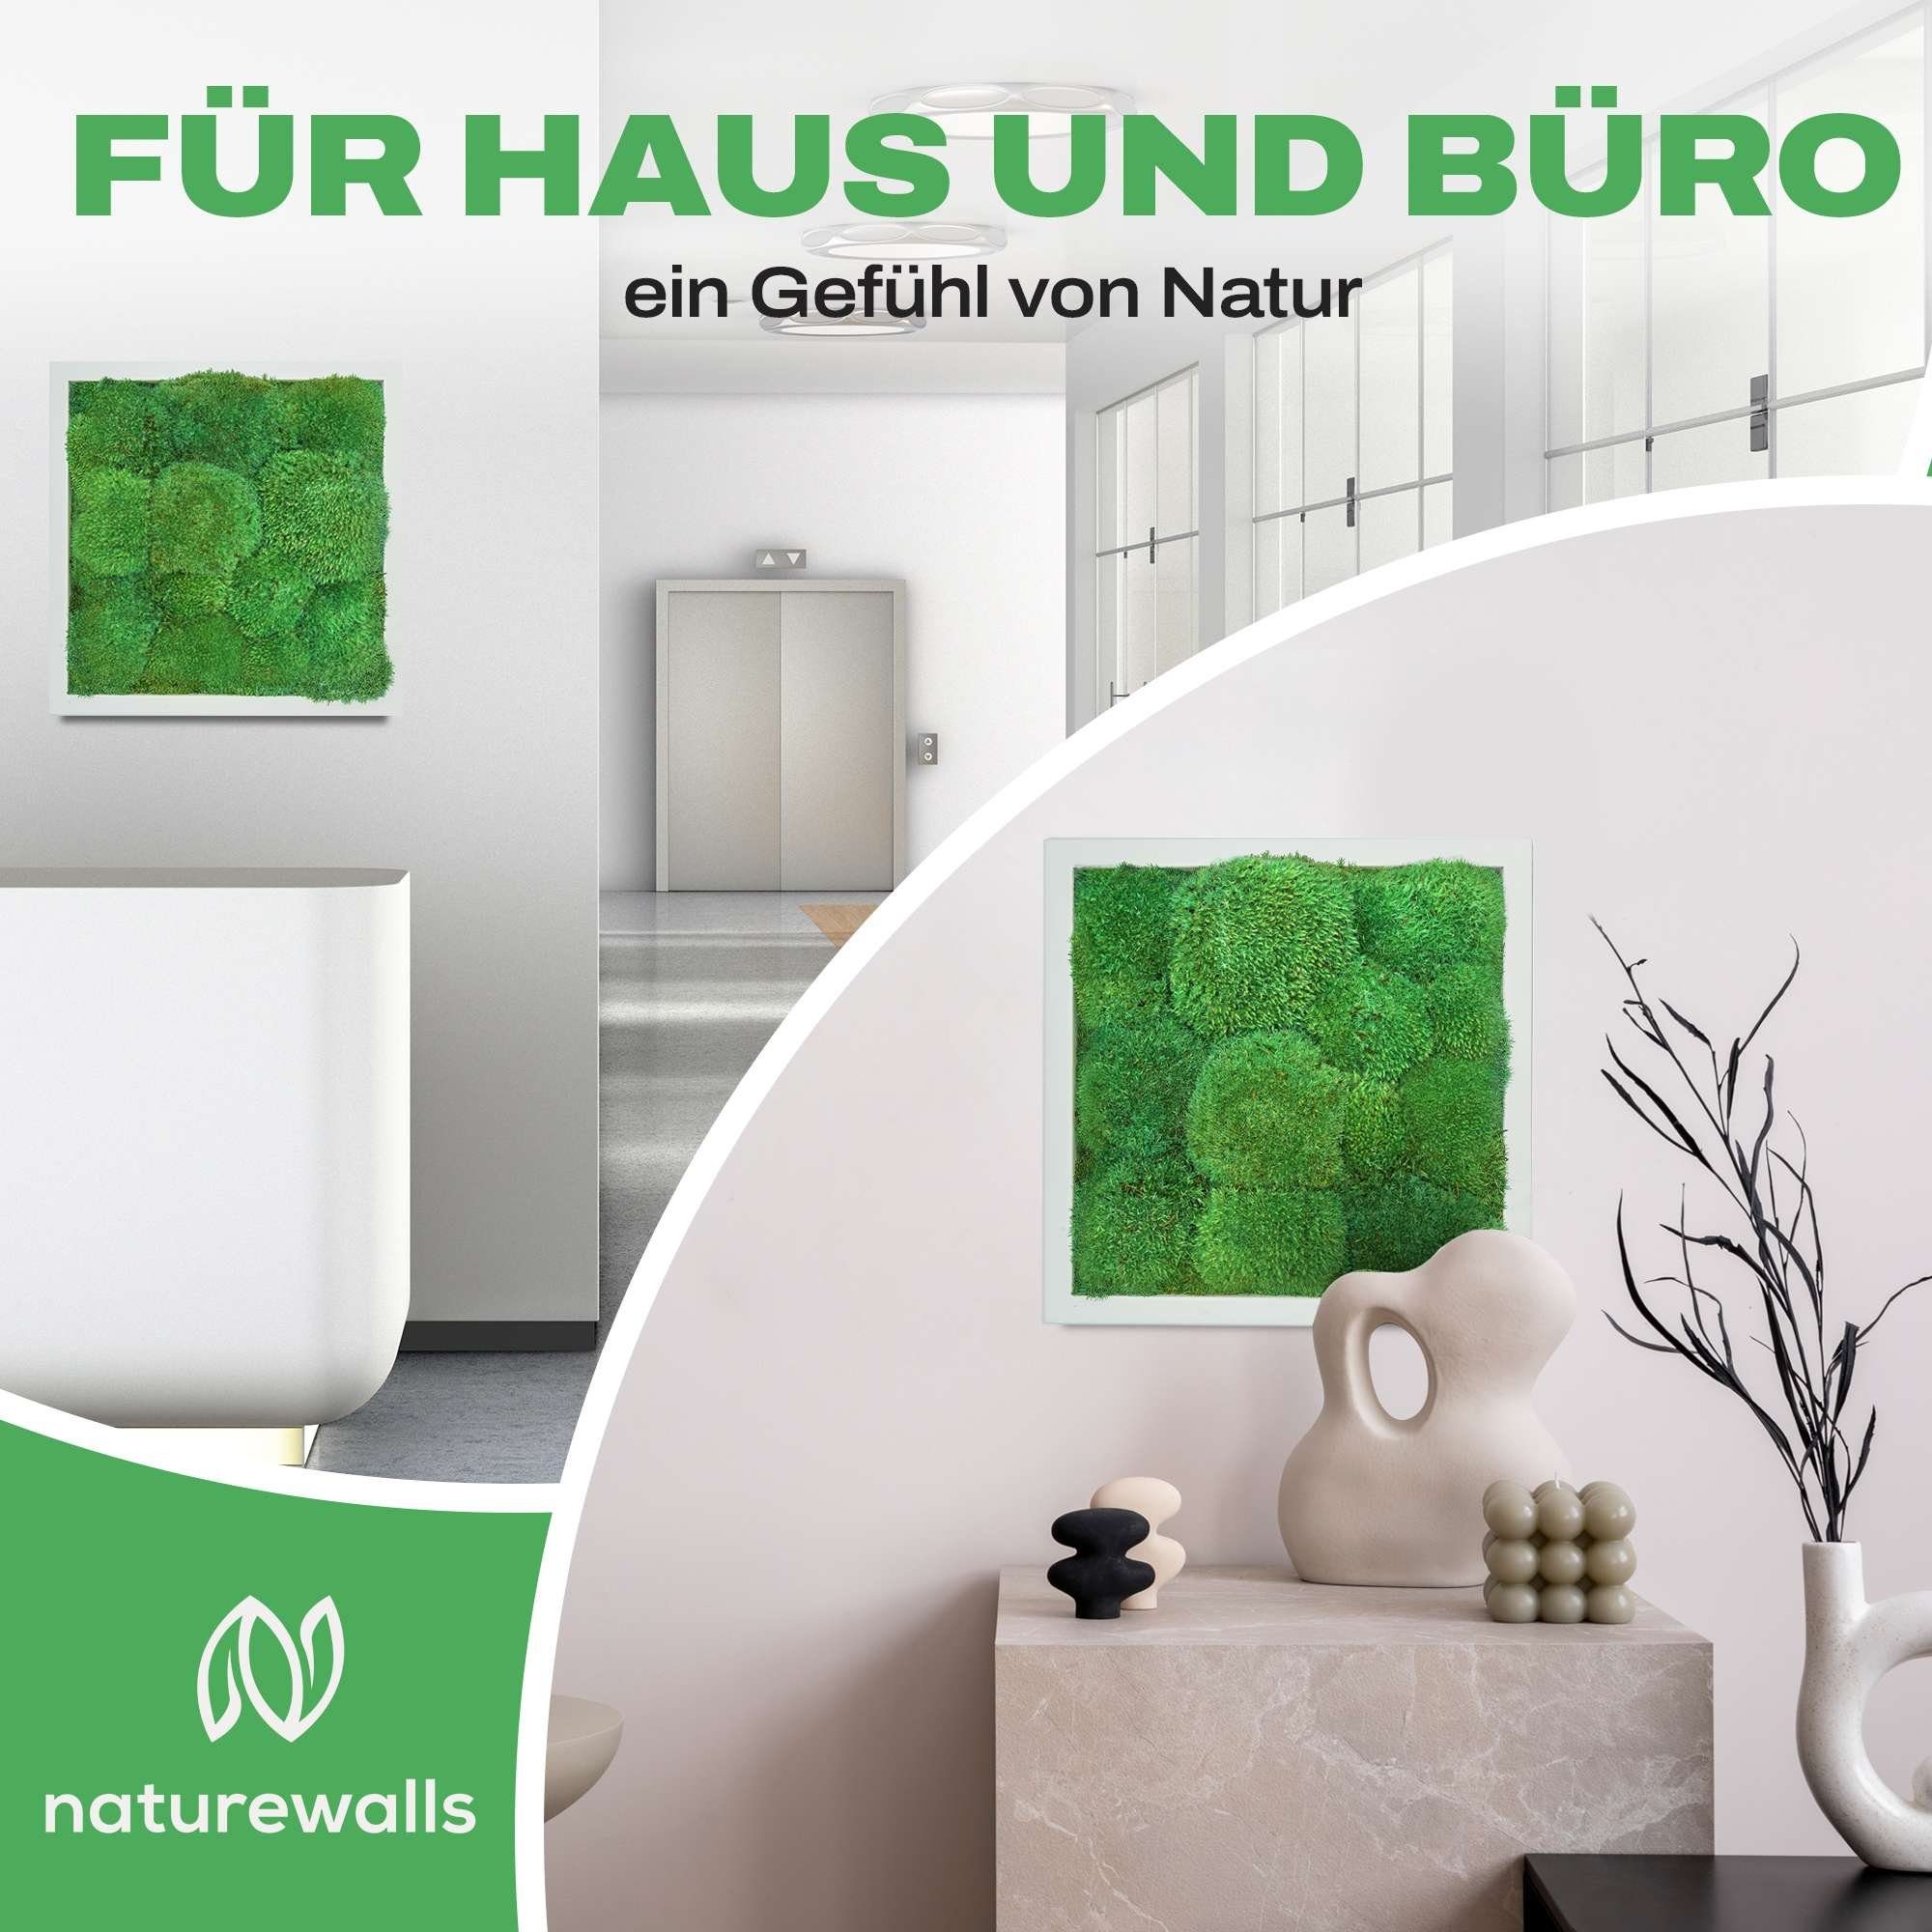 Bild Kugelmoos (1 konserviert Moosbild Pflanzenbild - Weiß - Wandbild, naturewalls St), Vollholz-Rahmen